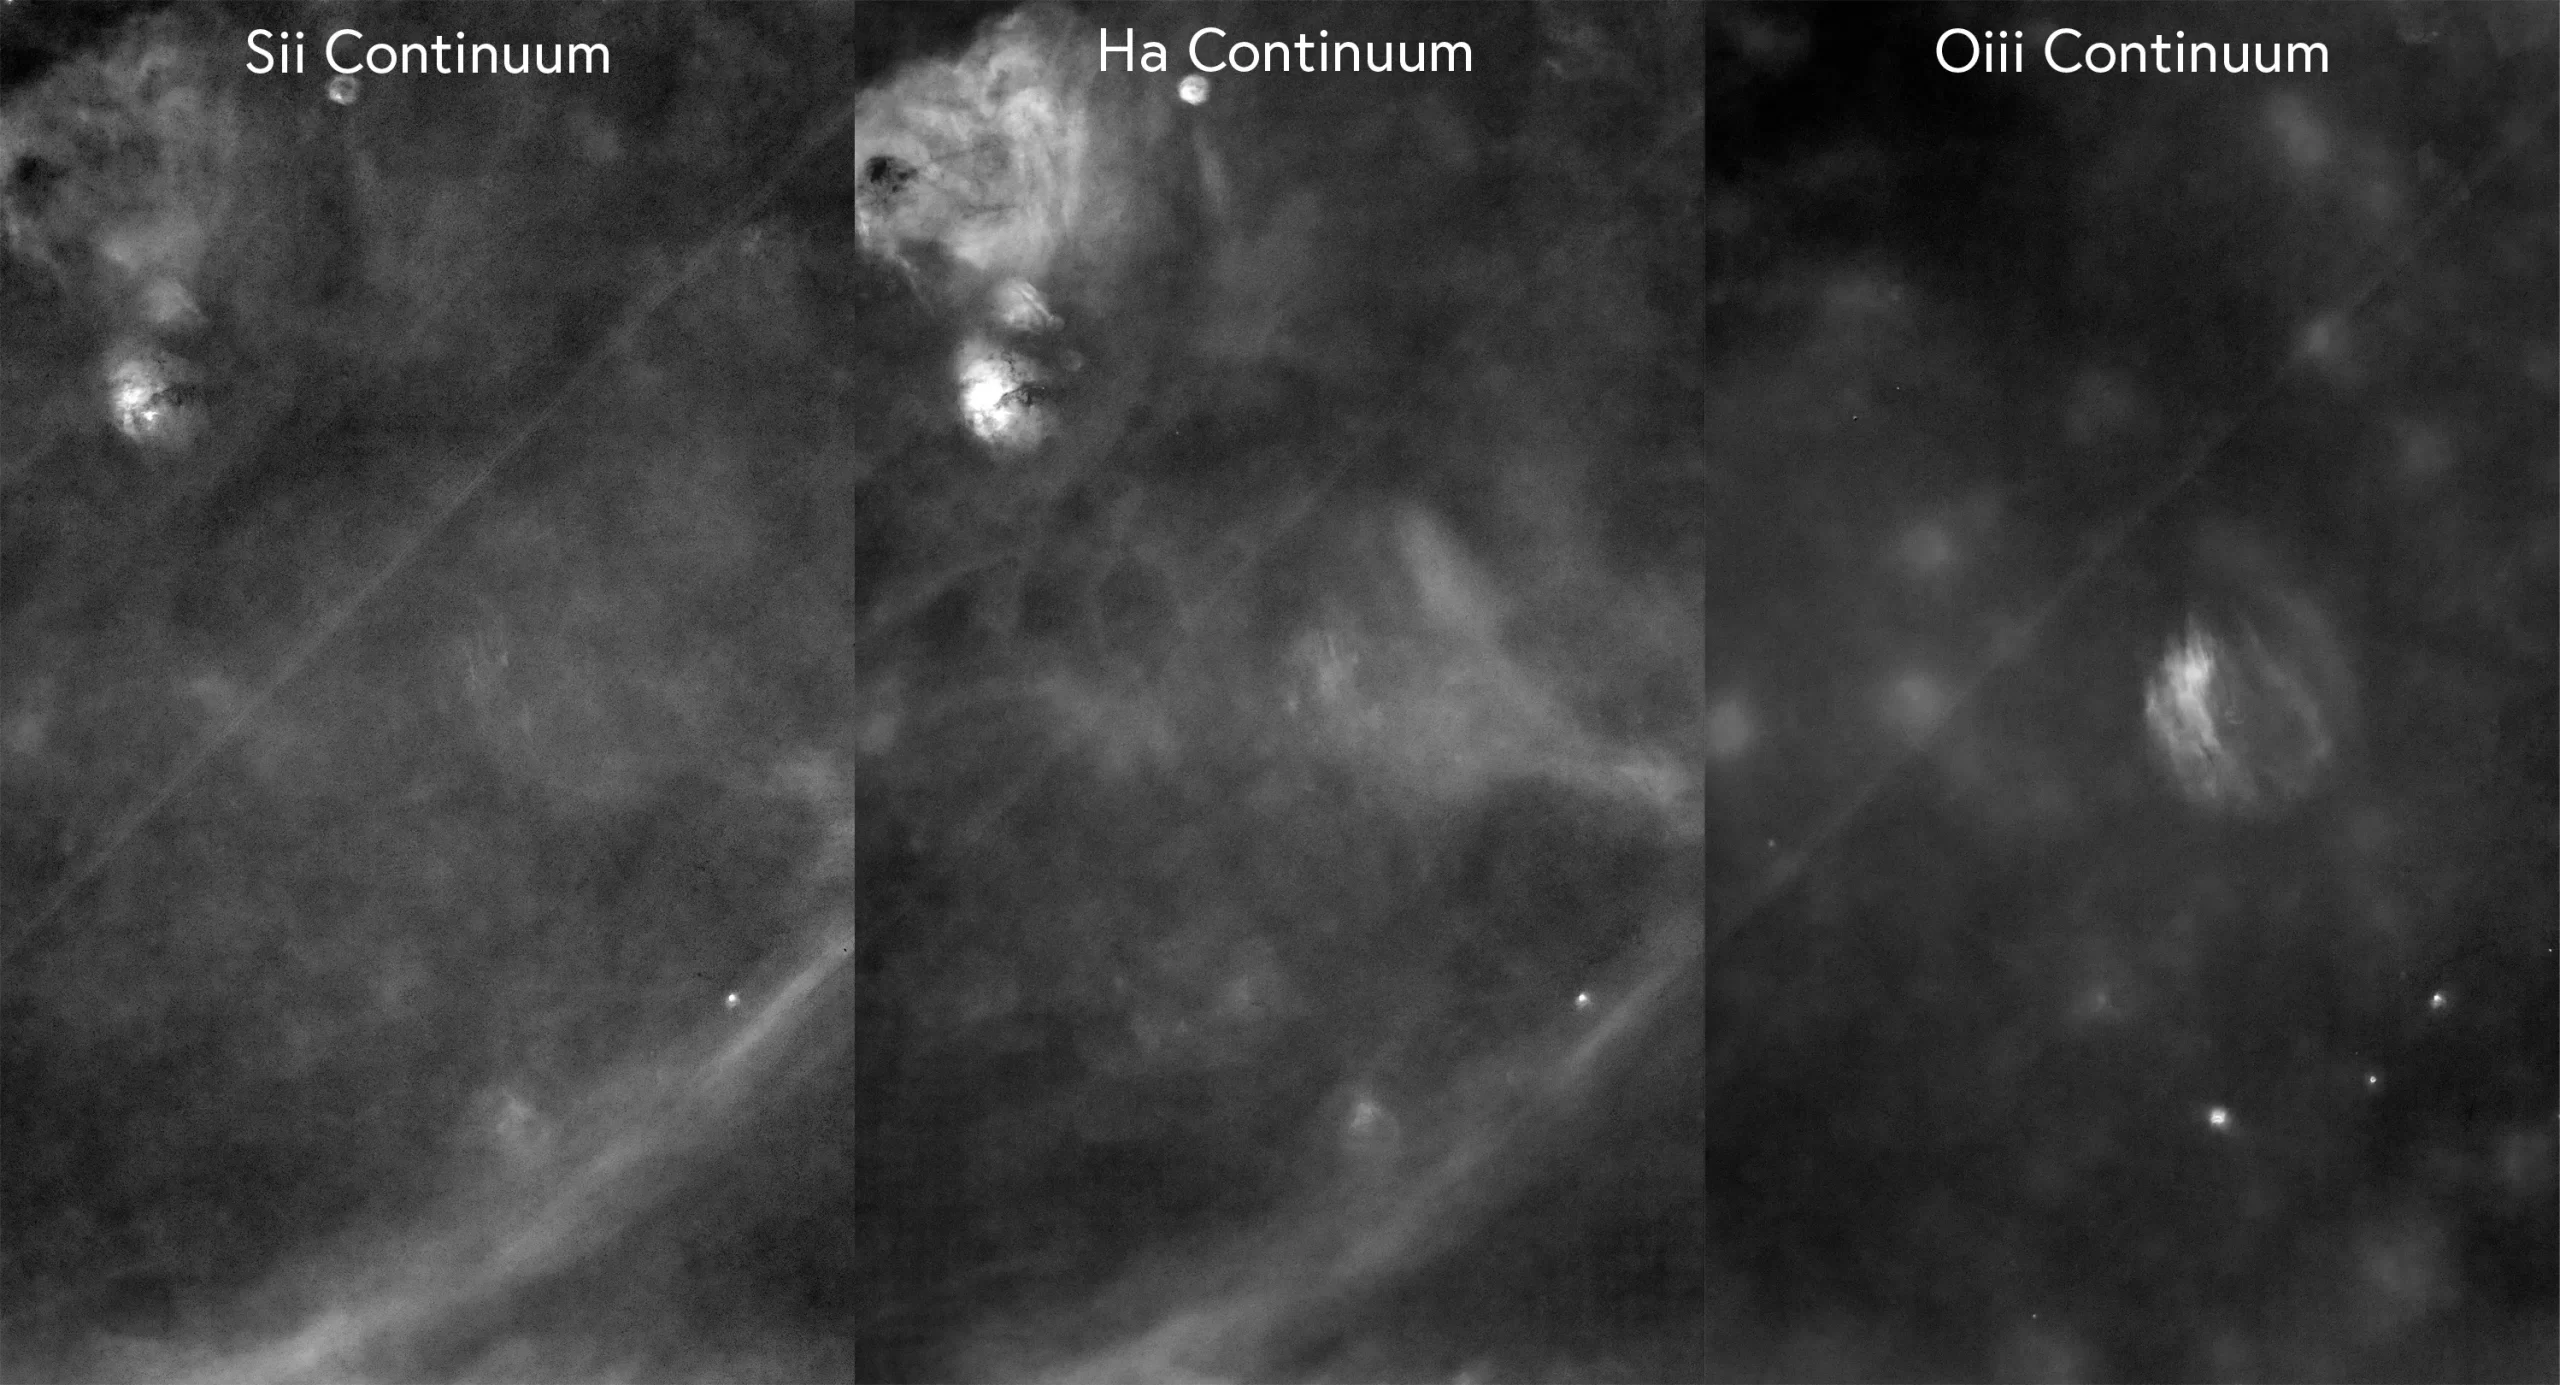 凯伯水晶星云在各个窄频滤镜中的影像亮度。显现该星云在其他发射谱线并没有出现，只有在[O III]特别明显。Here is an analysis of the Sii, Ha, and Oiii continuum images.